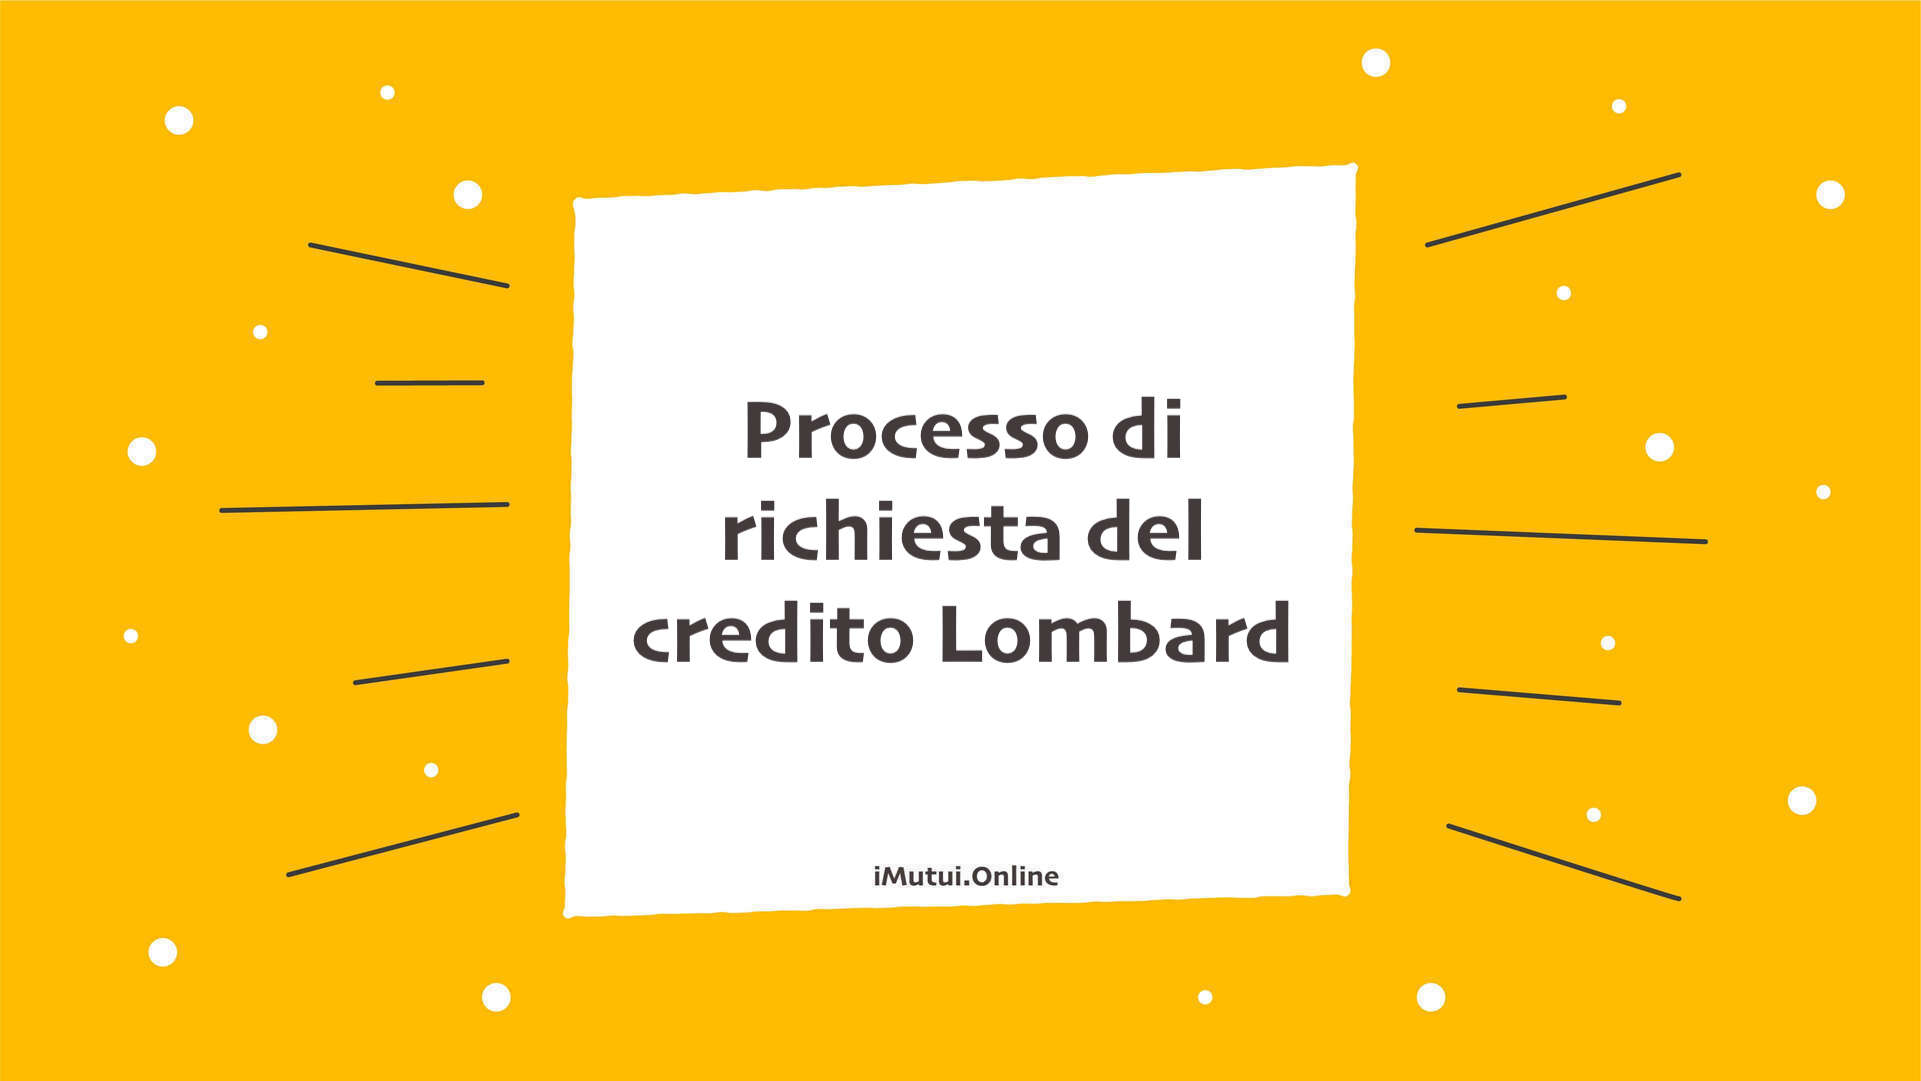 Processo di richiesta del credito Lombard